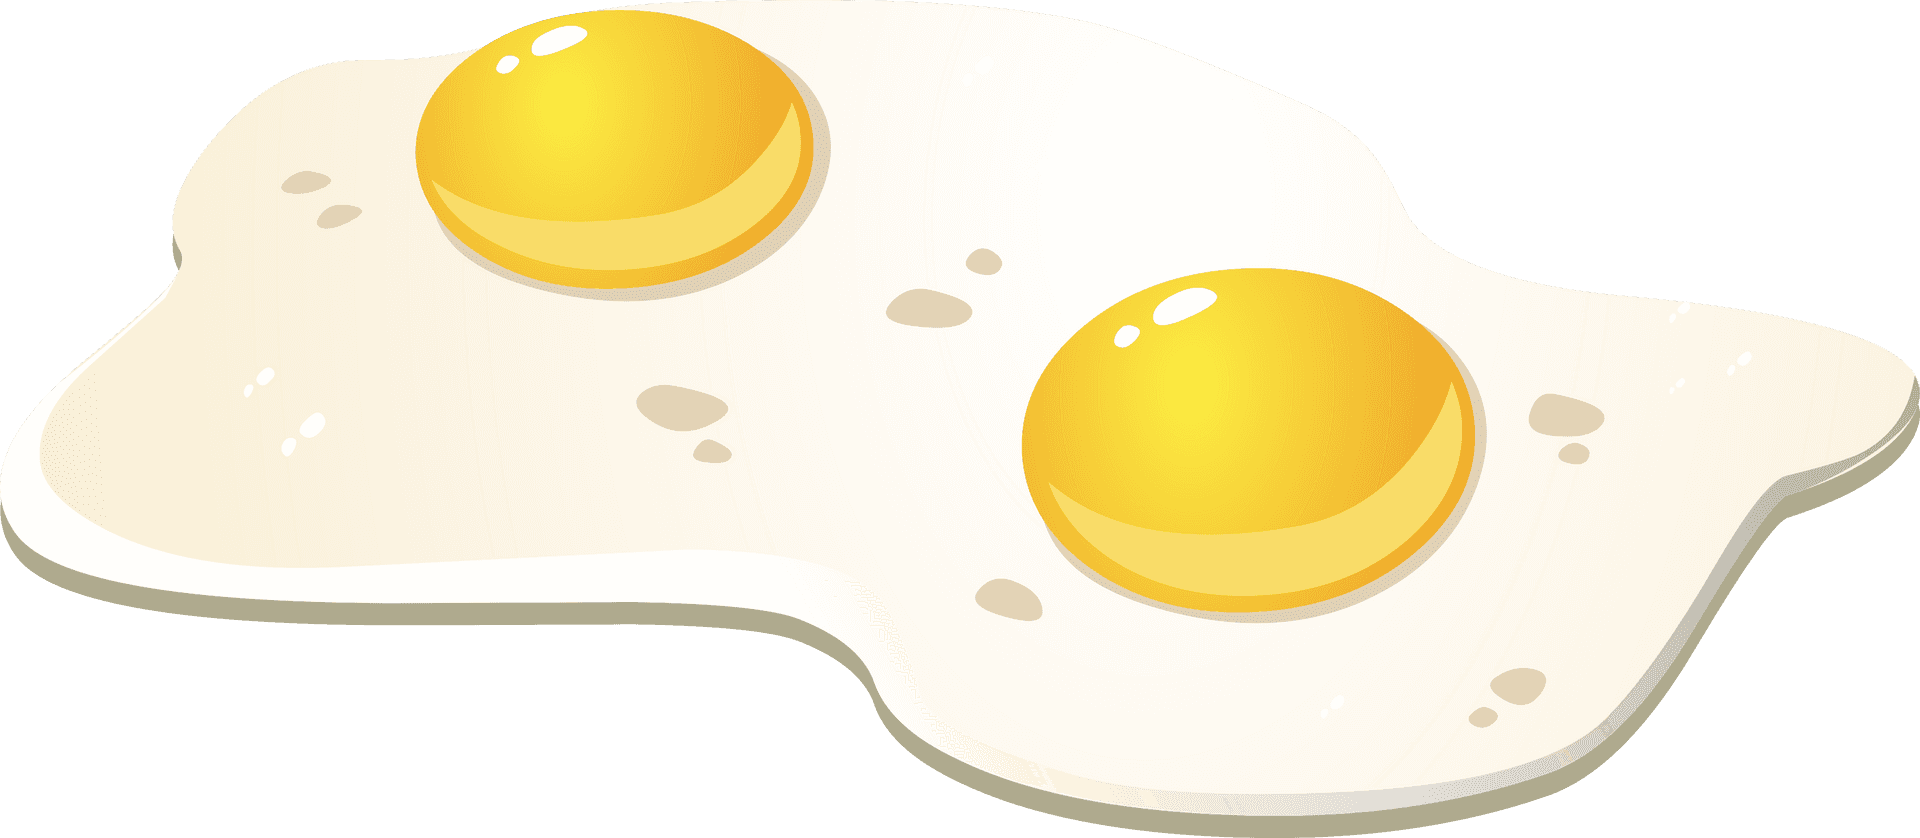 Double Yolk Fried Egg Illustration.png PNG image